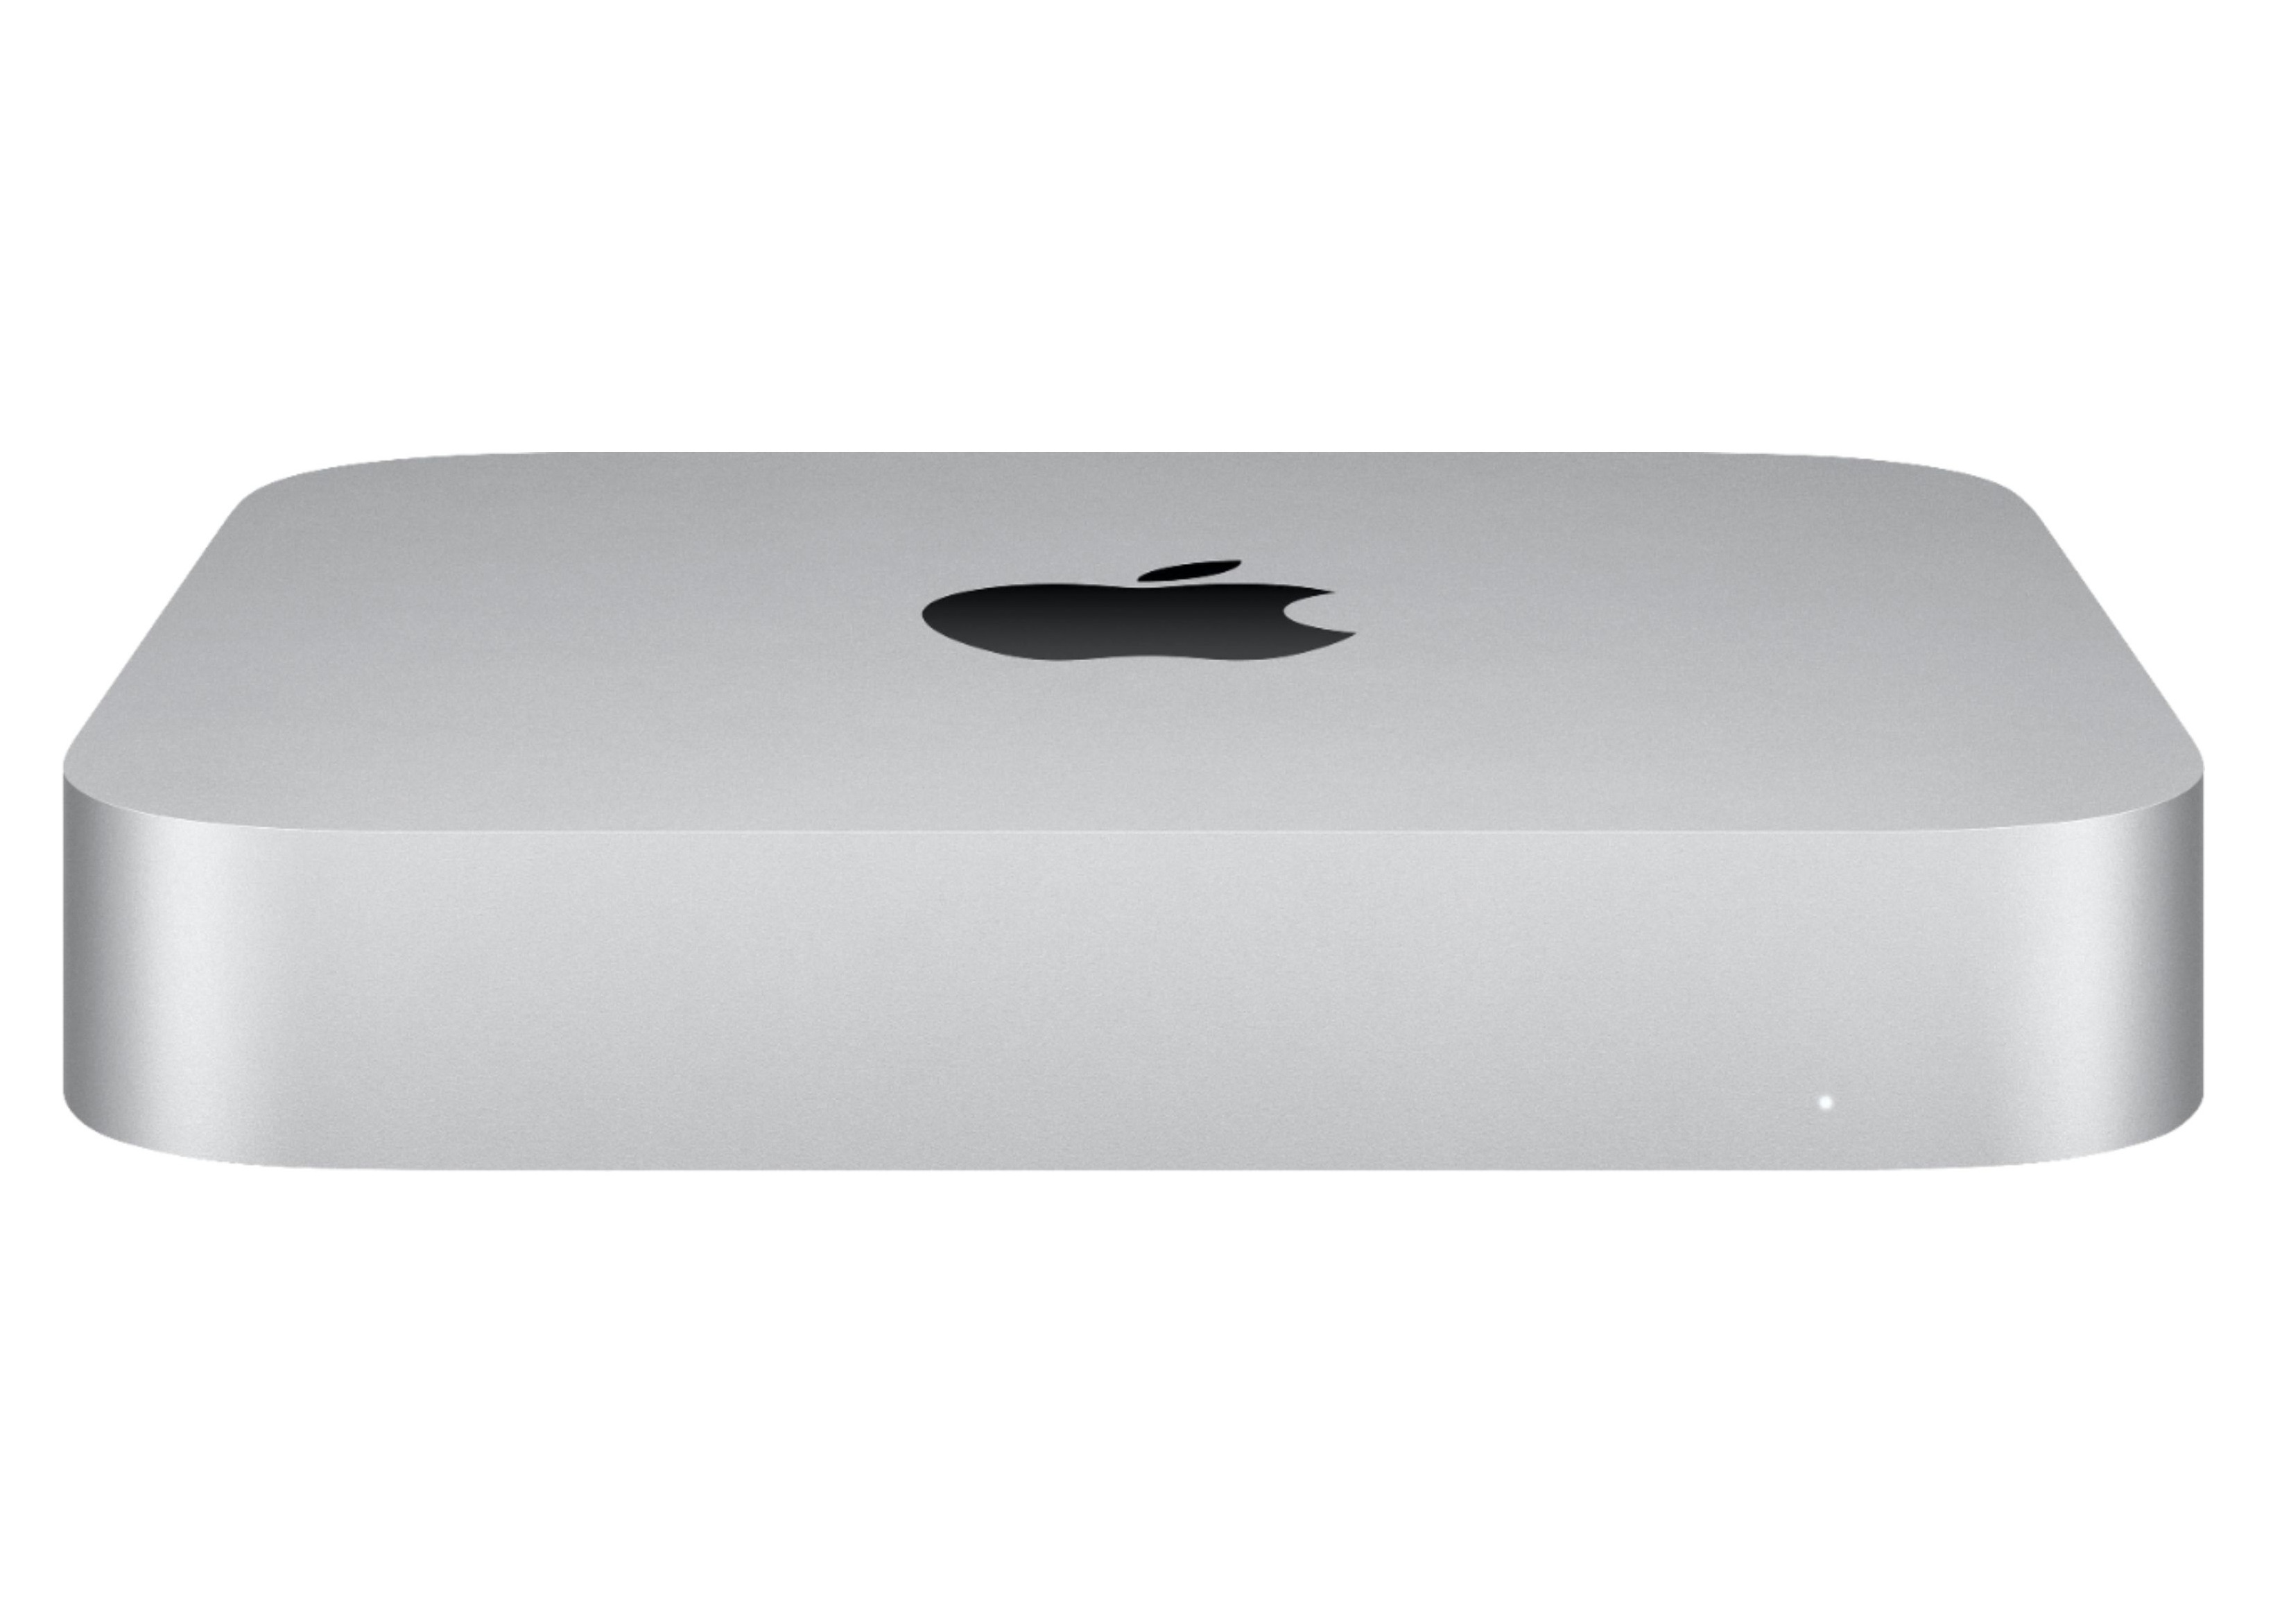 Apple Mac Mini Apple M1 Chip, 8GB RAM, 256GB SSD Storage 2020 ...